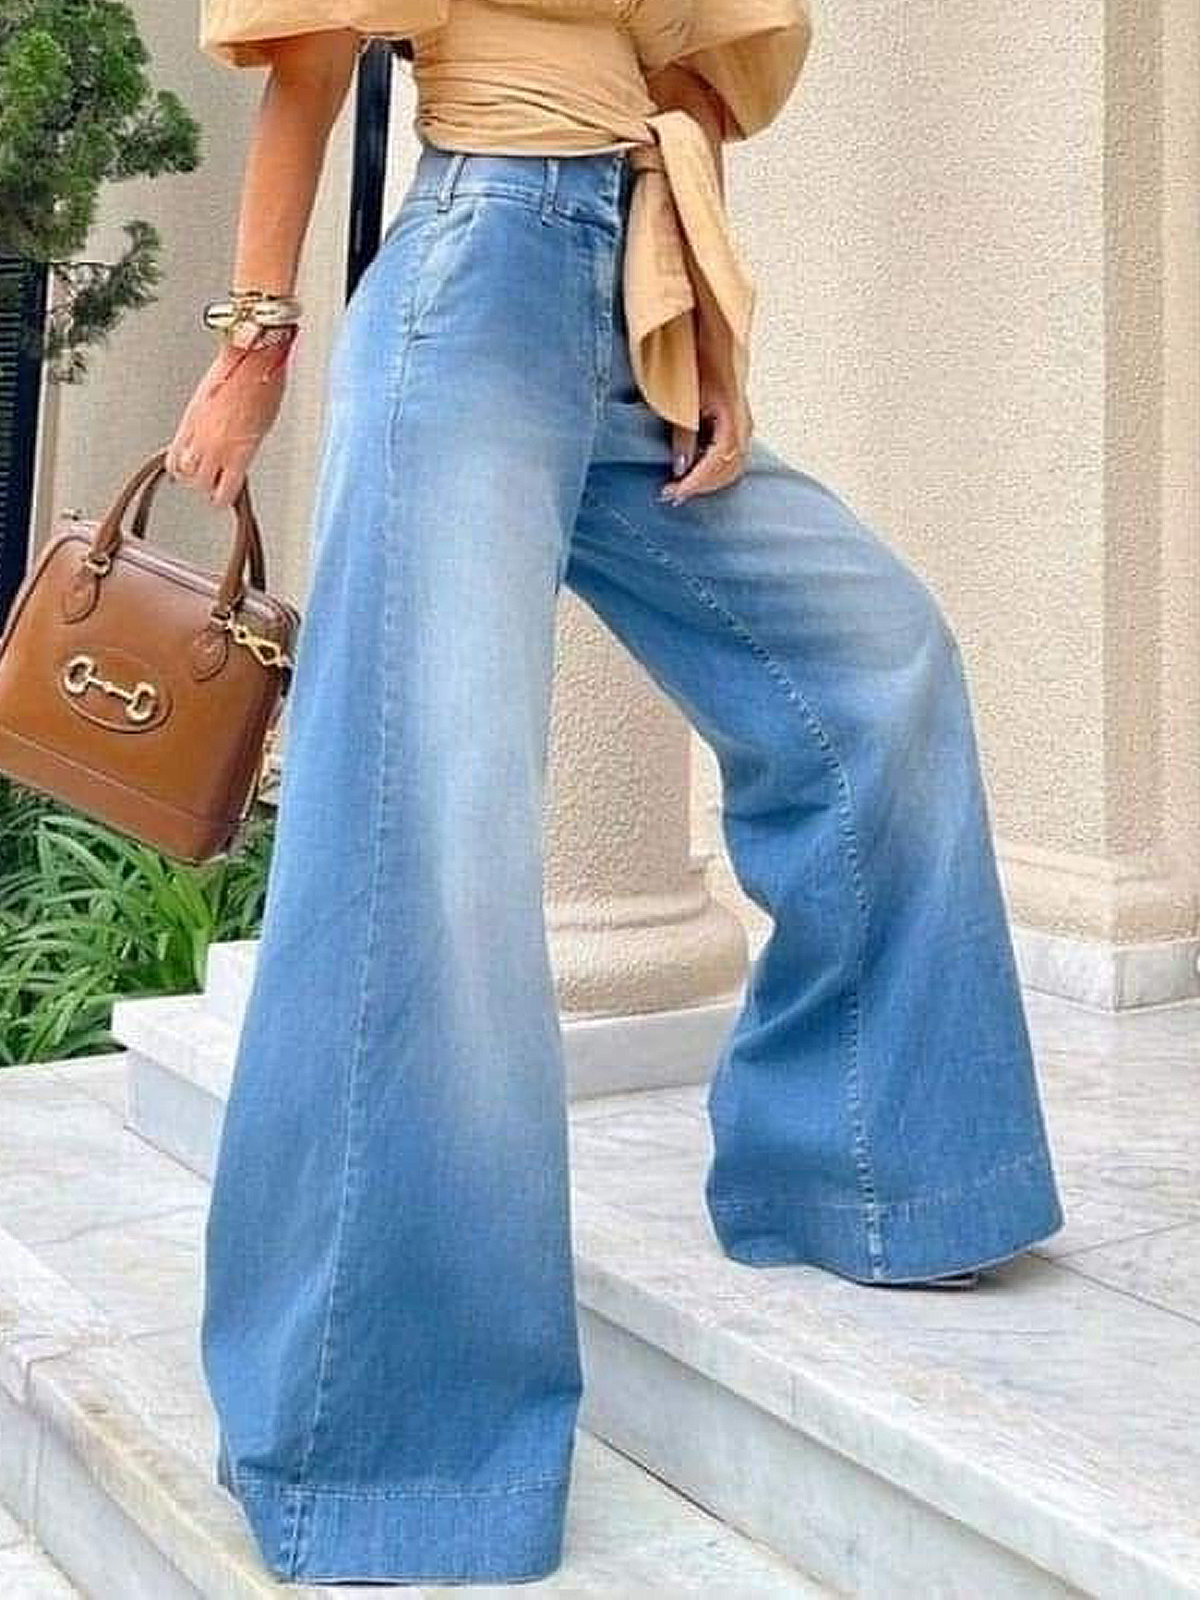 Weit Hohe Taille Unifarben Urban Weitem Bein Lang Jeans